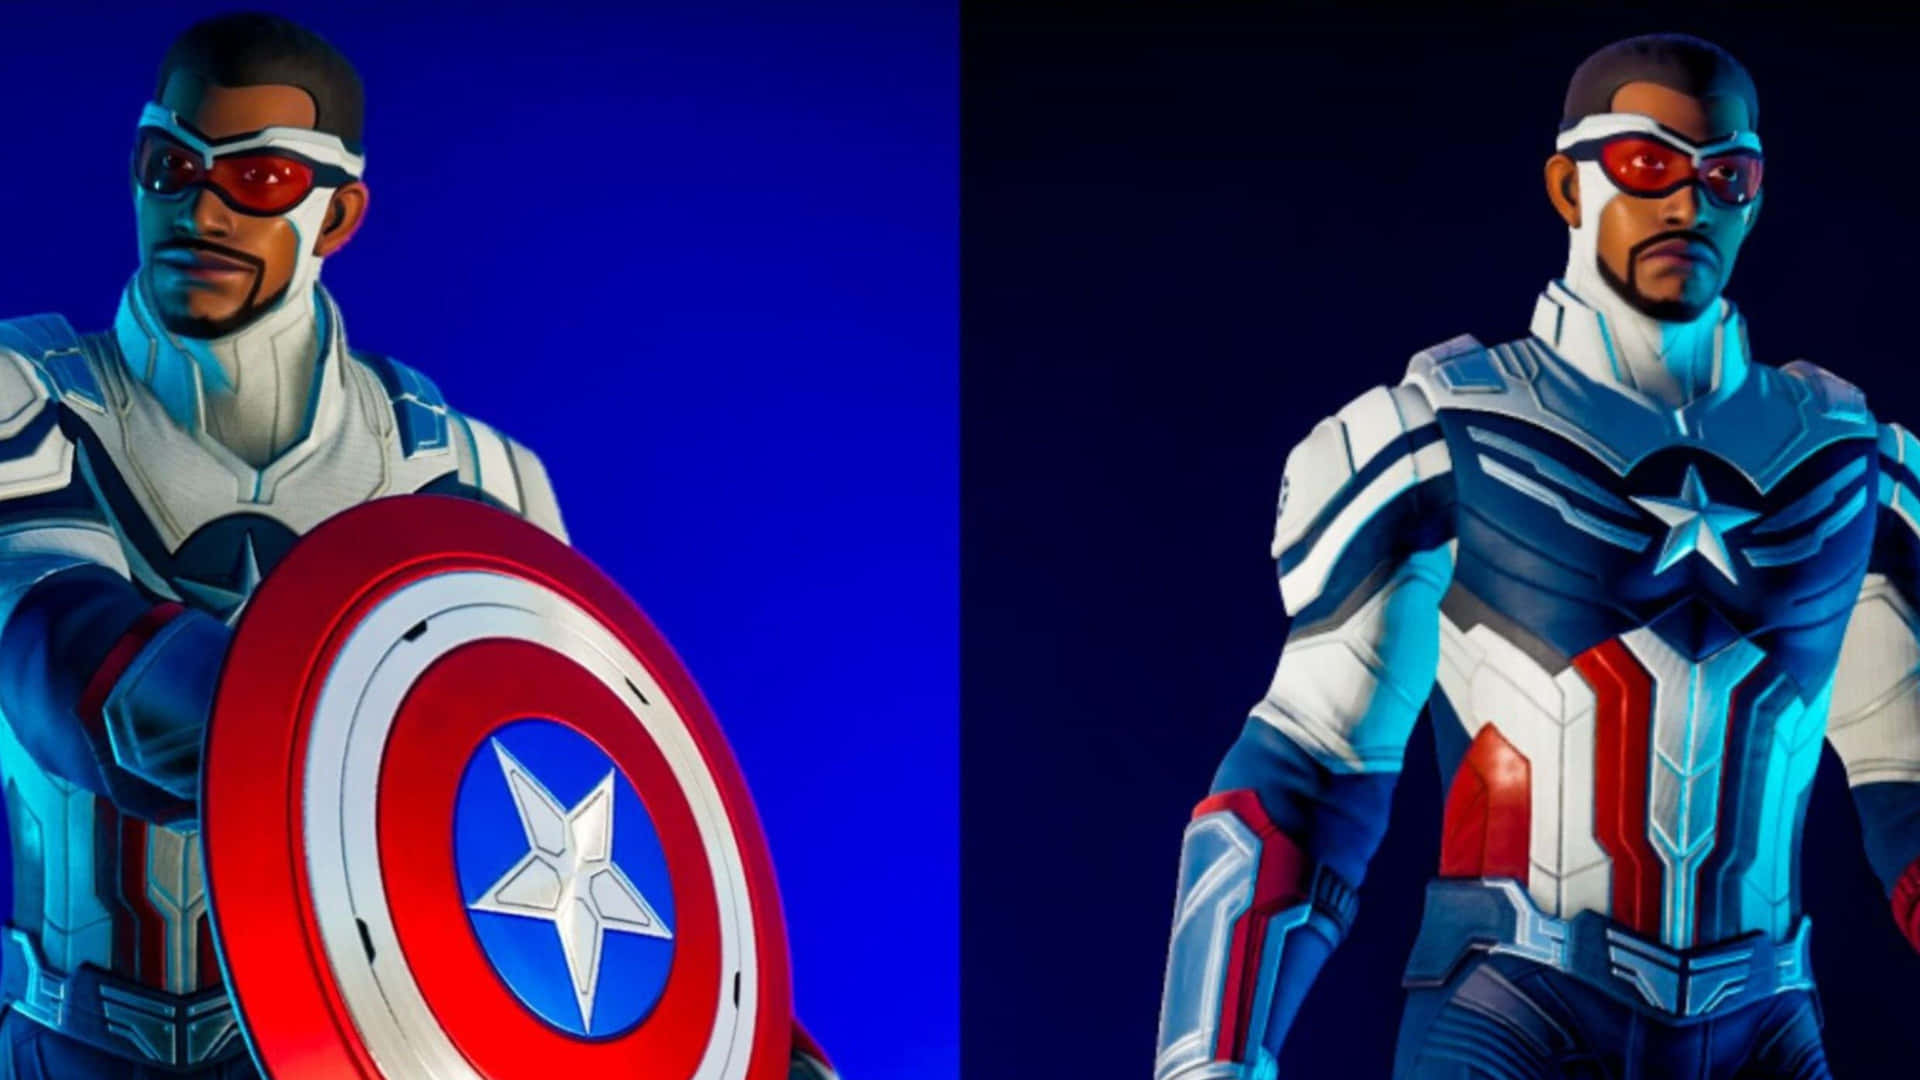 Dertapfere Captain America Bereit Für Den Kampf.